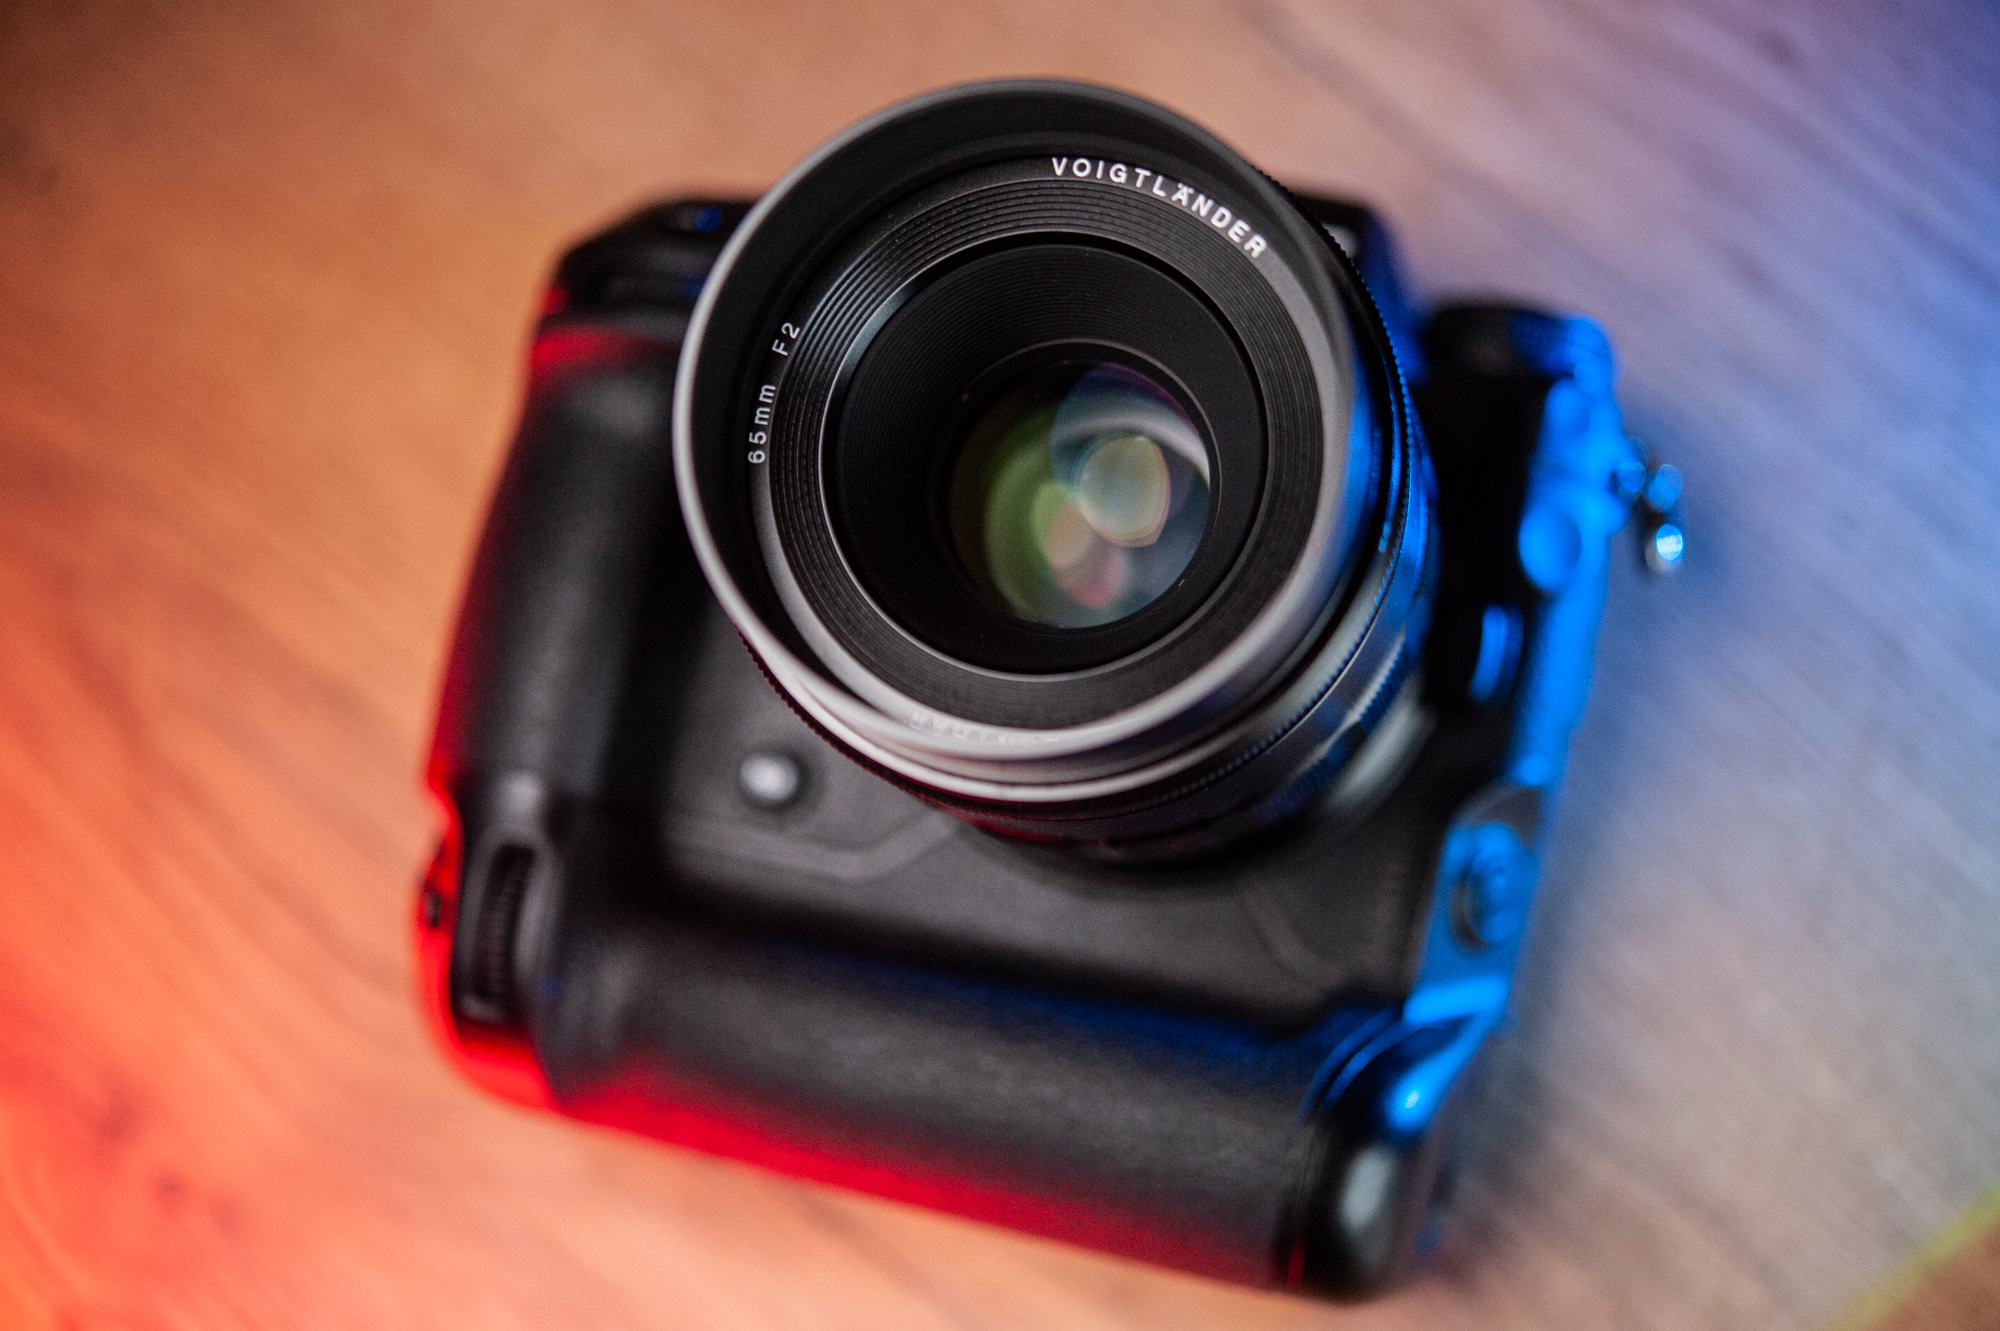 Zdjęcia przykładowe z obiektywu Voigtlander Macro APO Lanthar 65mm F2 w mocowaniu Nikon Z. Towarzyszył Nikon Z6